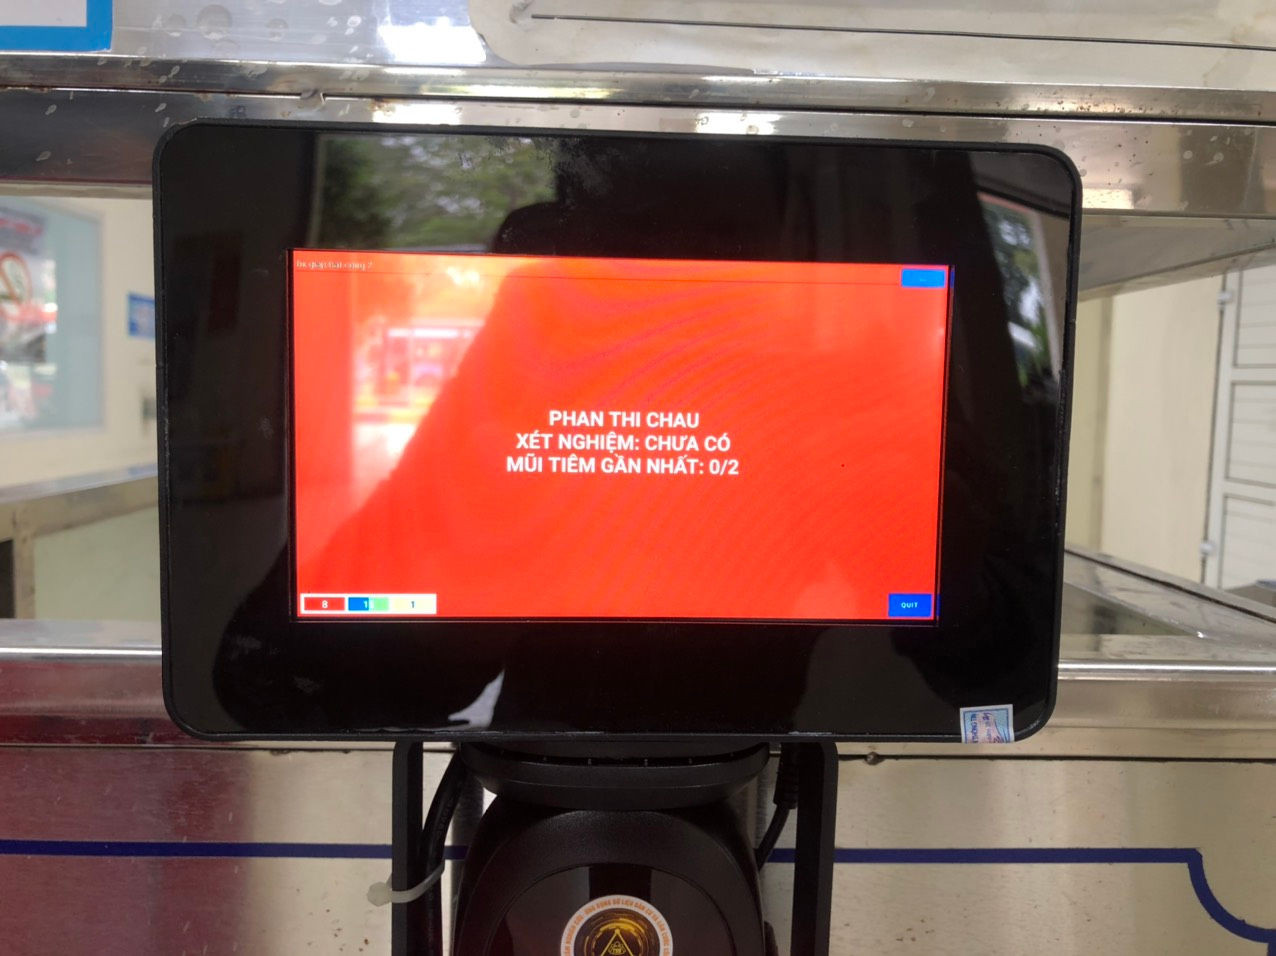 Quét mã QR tại Bến xe Giáp Bát và Mỹ Đình: Thuận tiện, không lo lộ thông tin cá nhân - Ảnh 1.